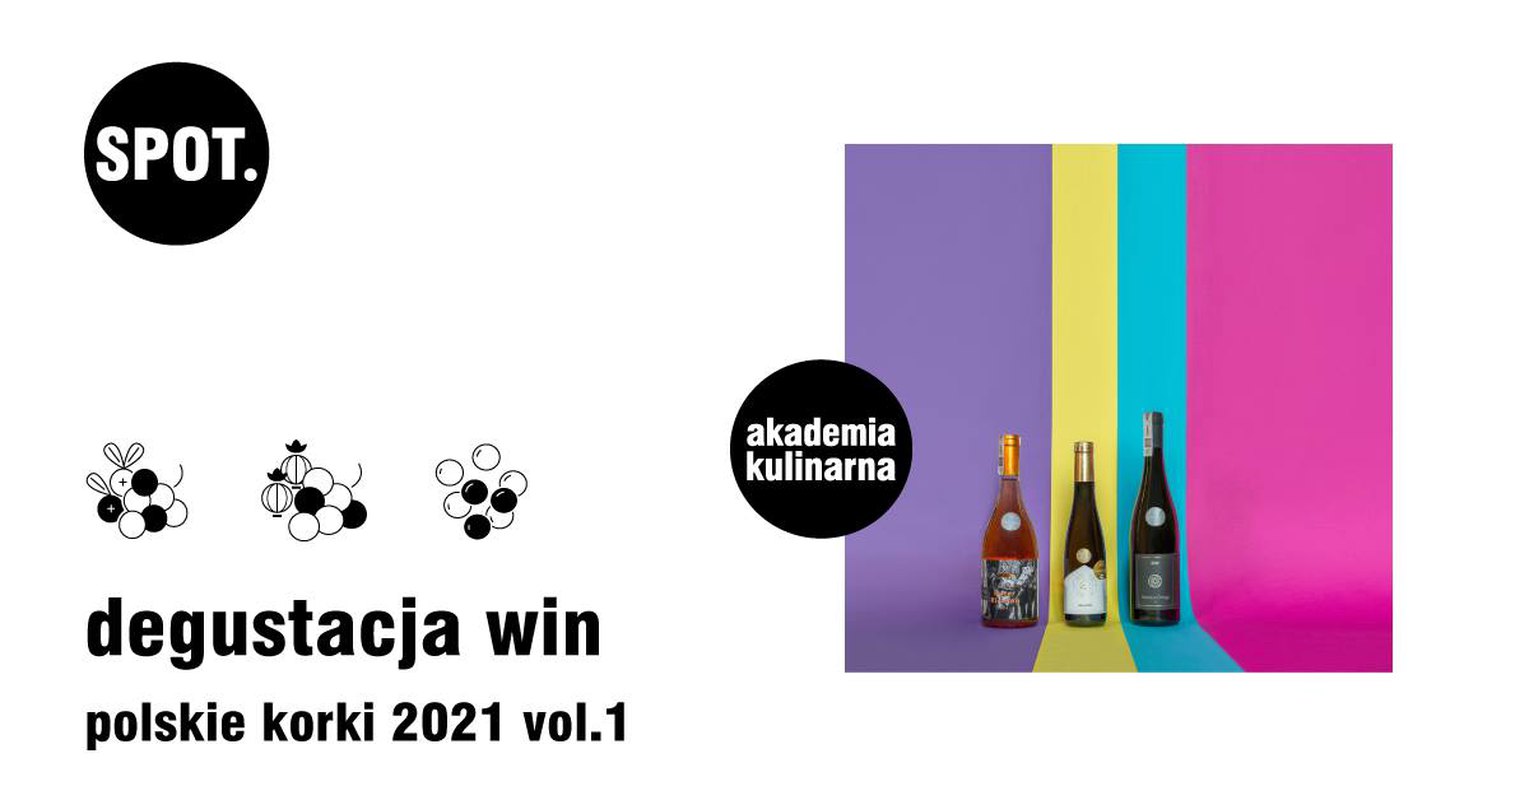 Degustacja win_polskie korki 2021 vol. 1